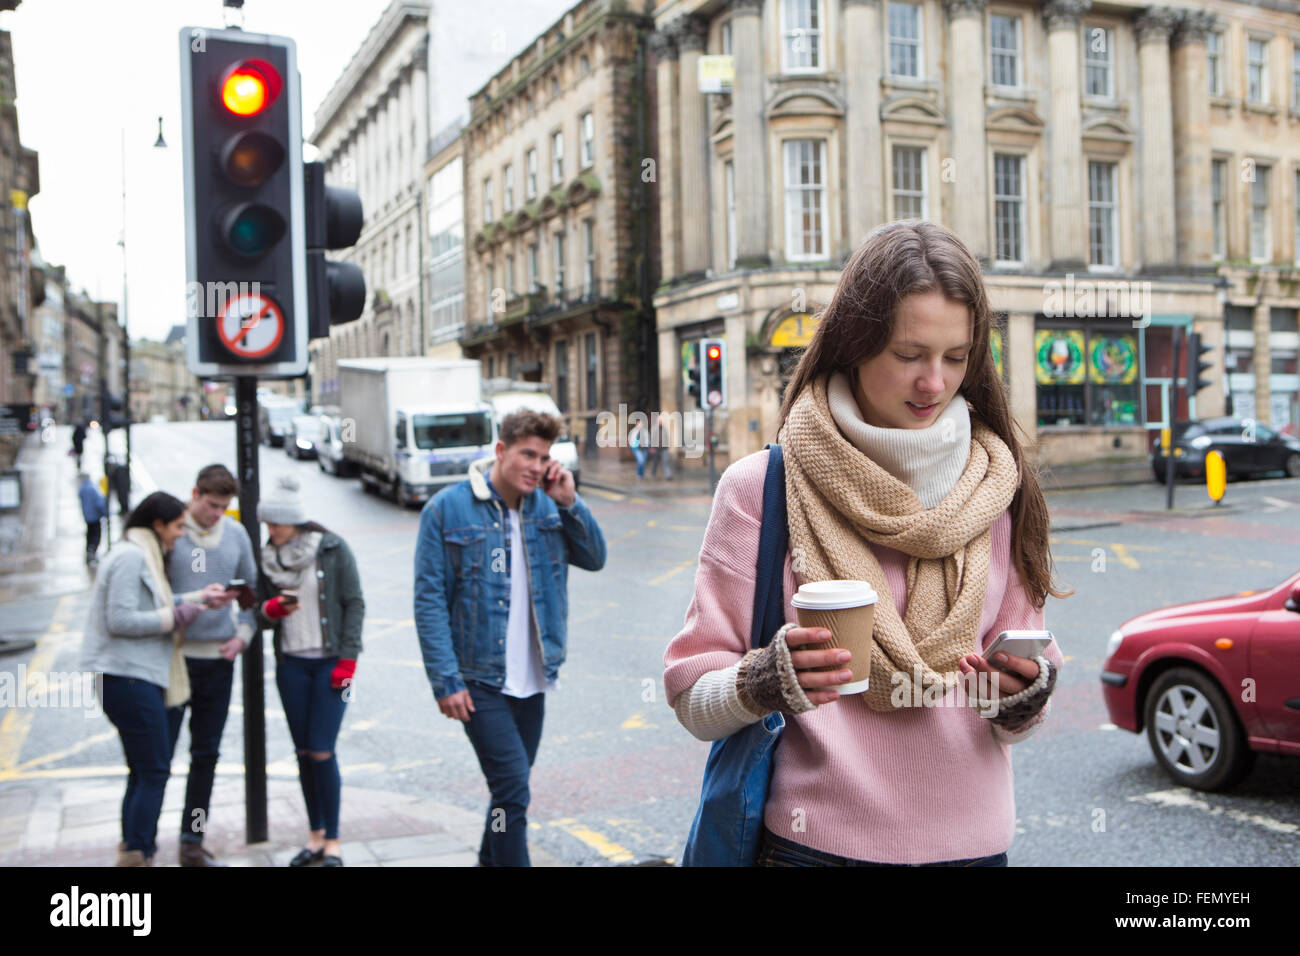 Eine junge Frau kann zu Fuß entlang einer Stadtstraße mit einem Smartphone gesehen werden. Andere junge Erwachsene sind im Hintergrund. Stockfoto